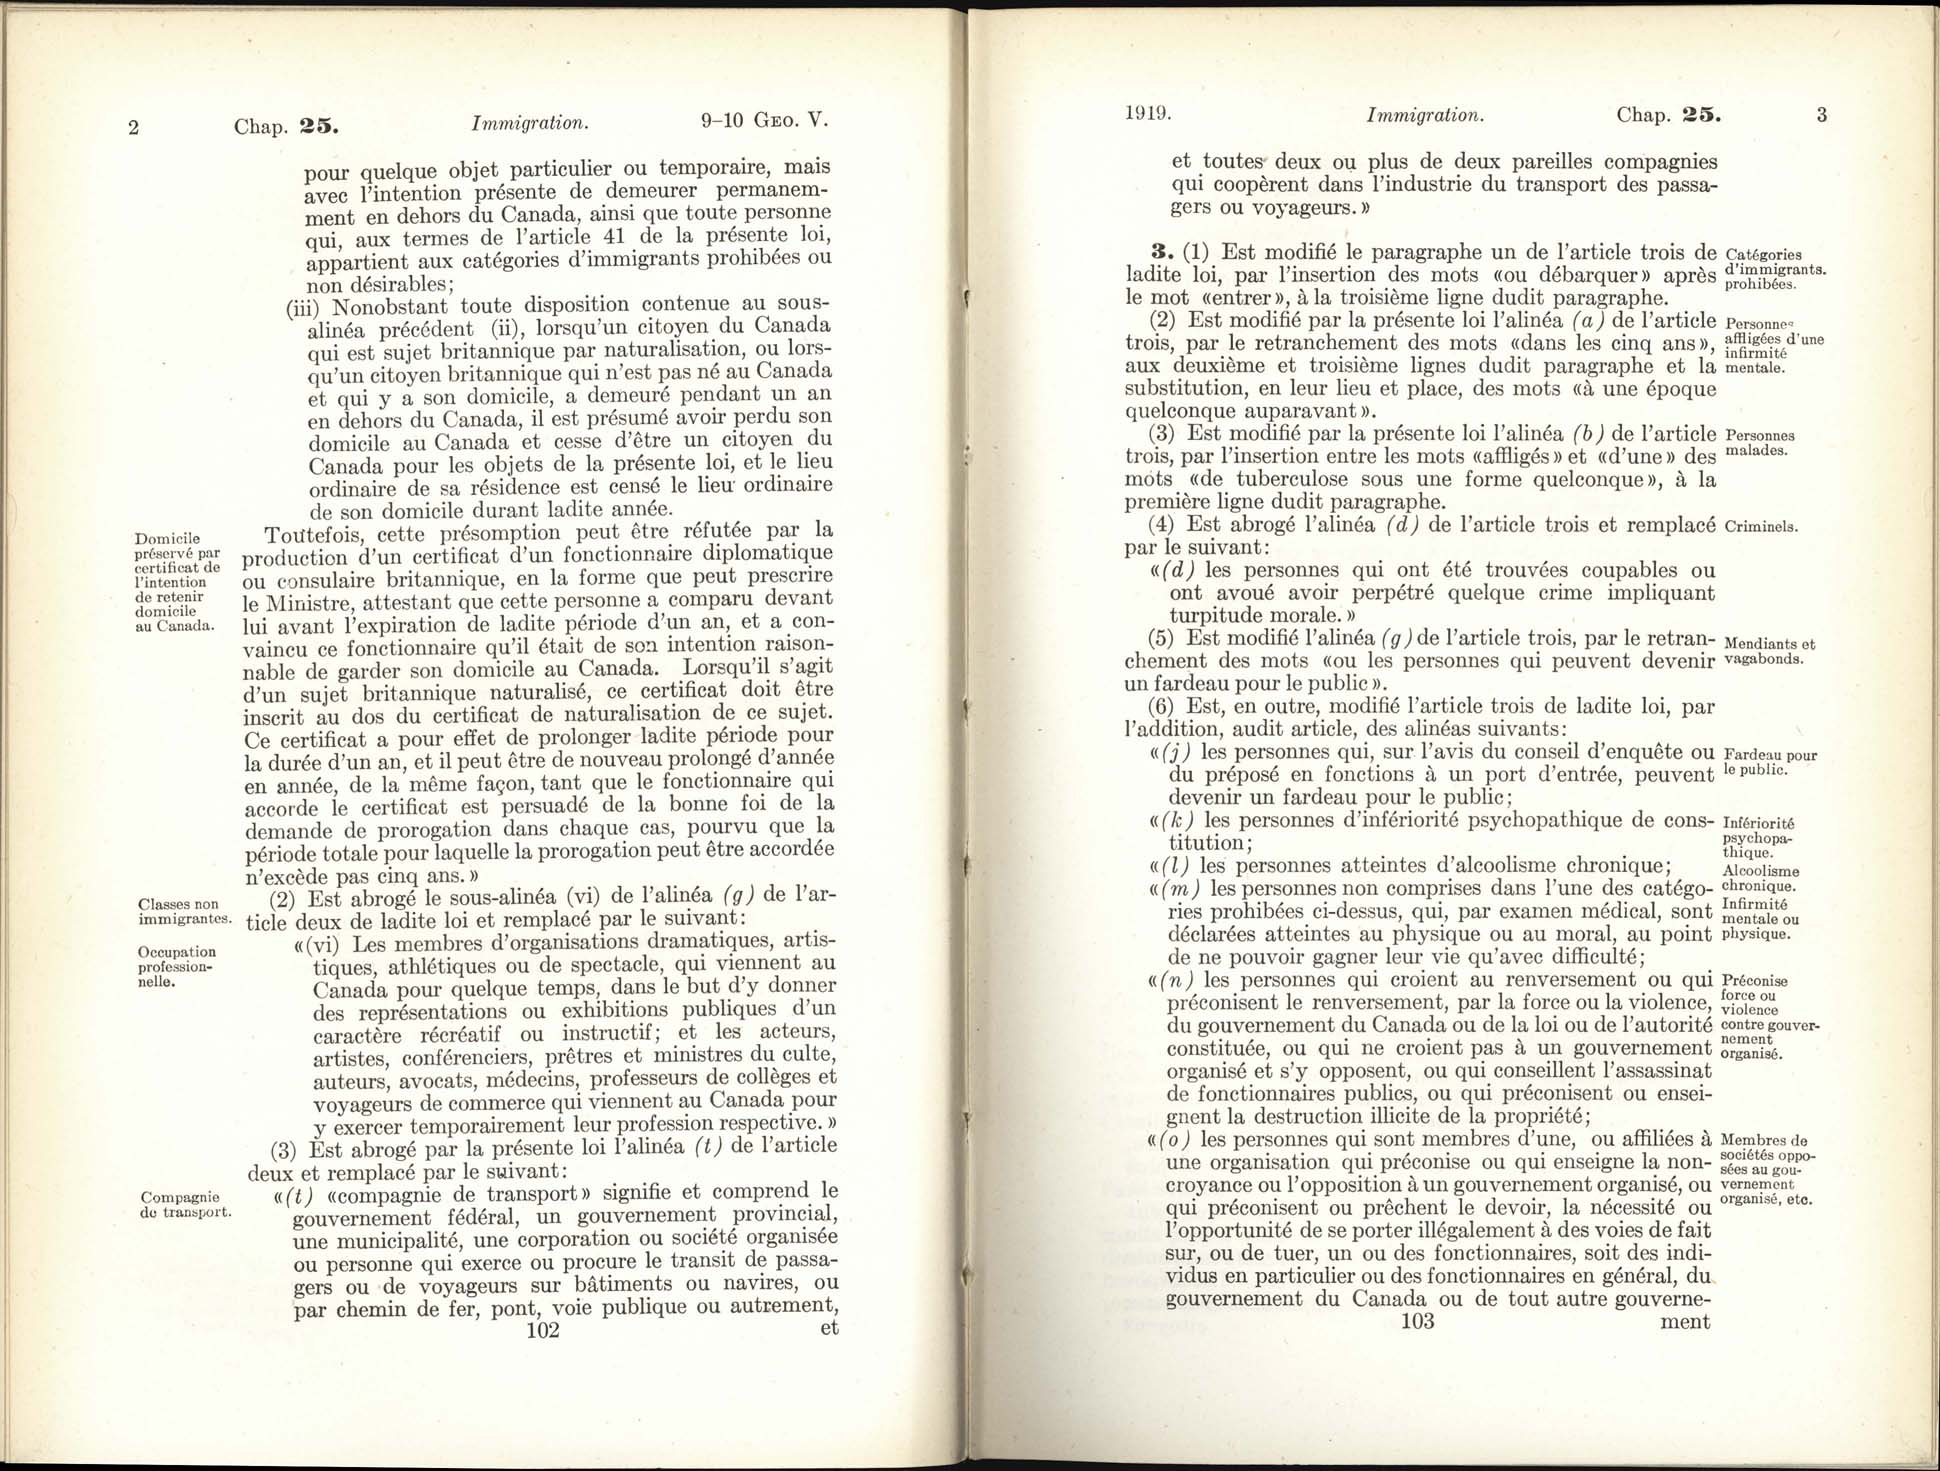 Page 102, 103 Loi de l’immigration amendement, 1919